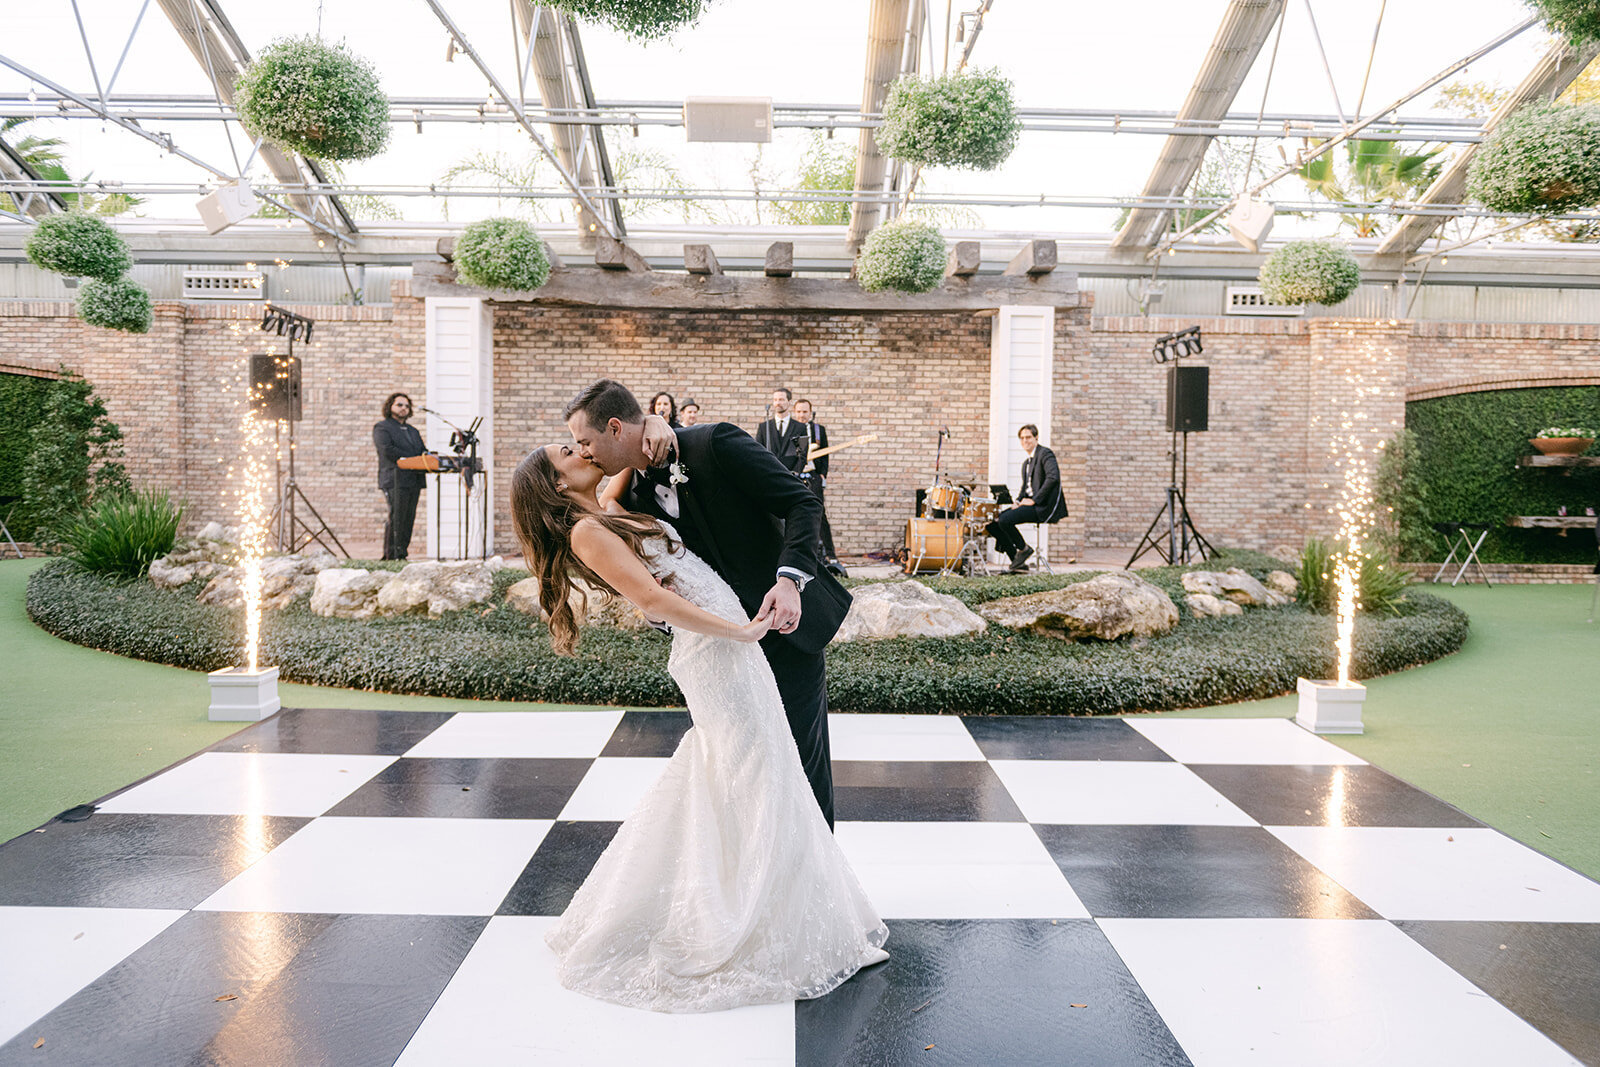 CORNELIA ZAISS PHOTOGRAPHY ASHLYN + RHETT WEDDING SNEAKS 78_websize